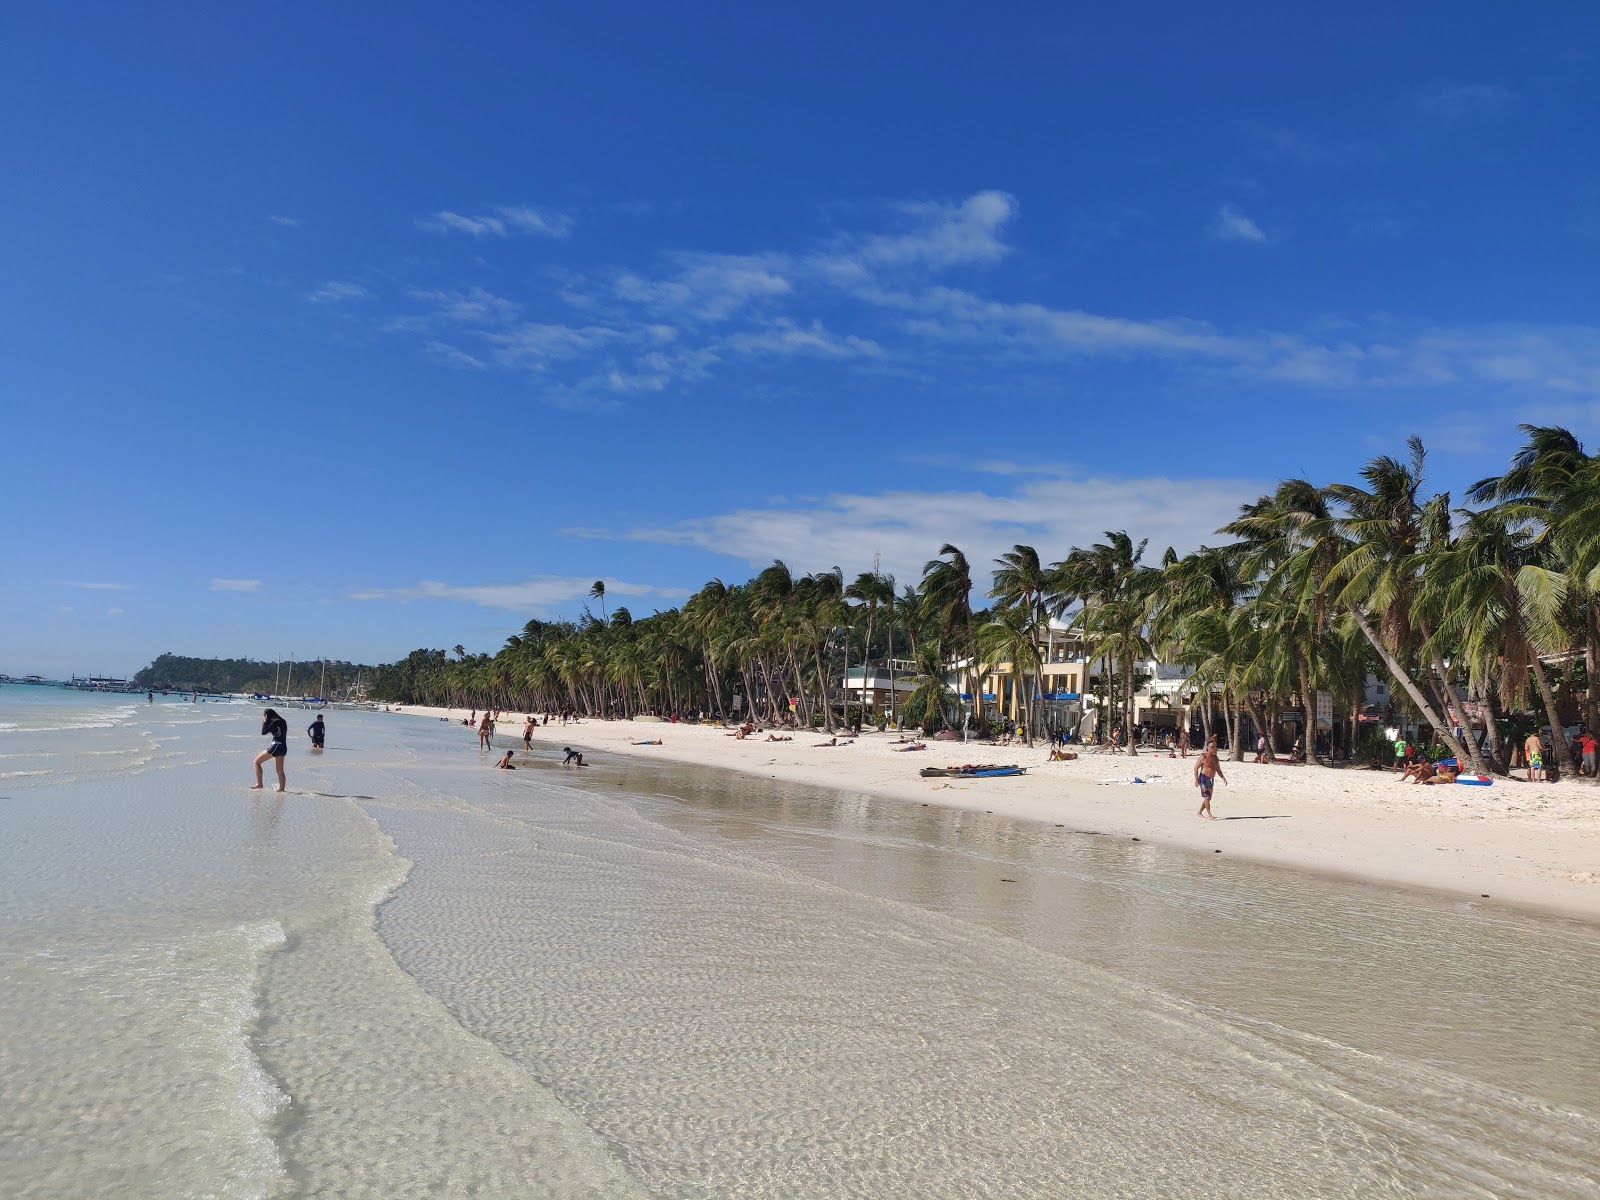 Beyaz Plaj'in fotoğrafı - rahatlamayı sevenler arasında popüler bir yer